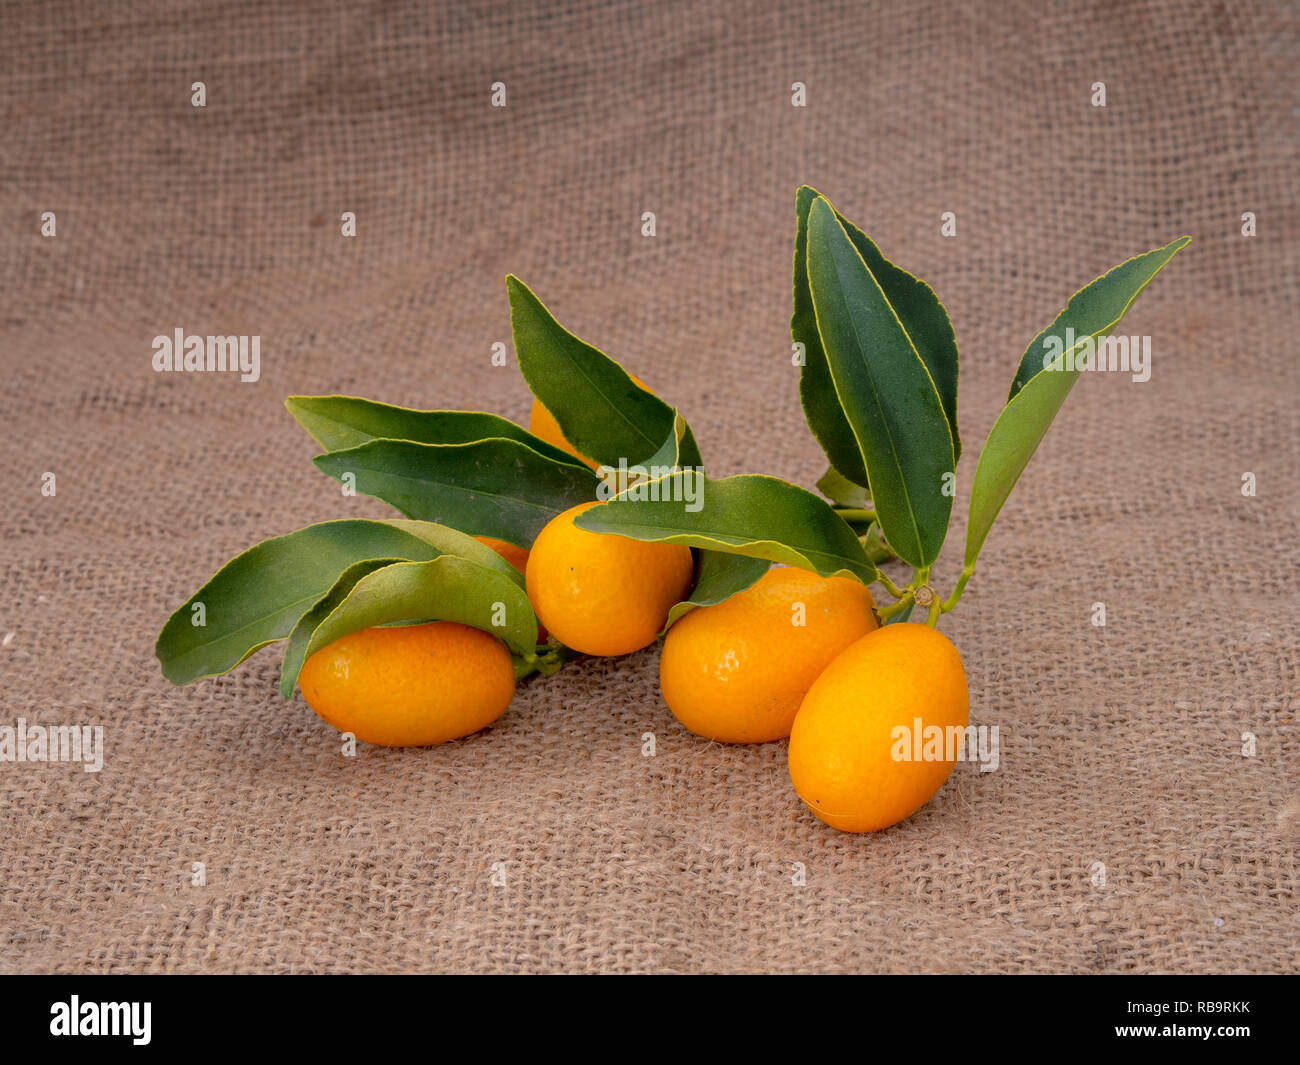 Kumquat, cumquat agrumes sur toile de jute, avec des feuilles. Produits frais cueillis. Banque D'Images